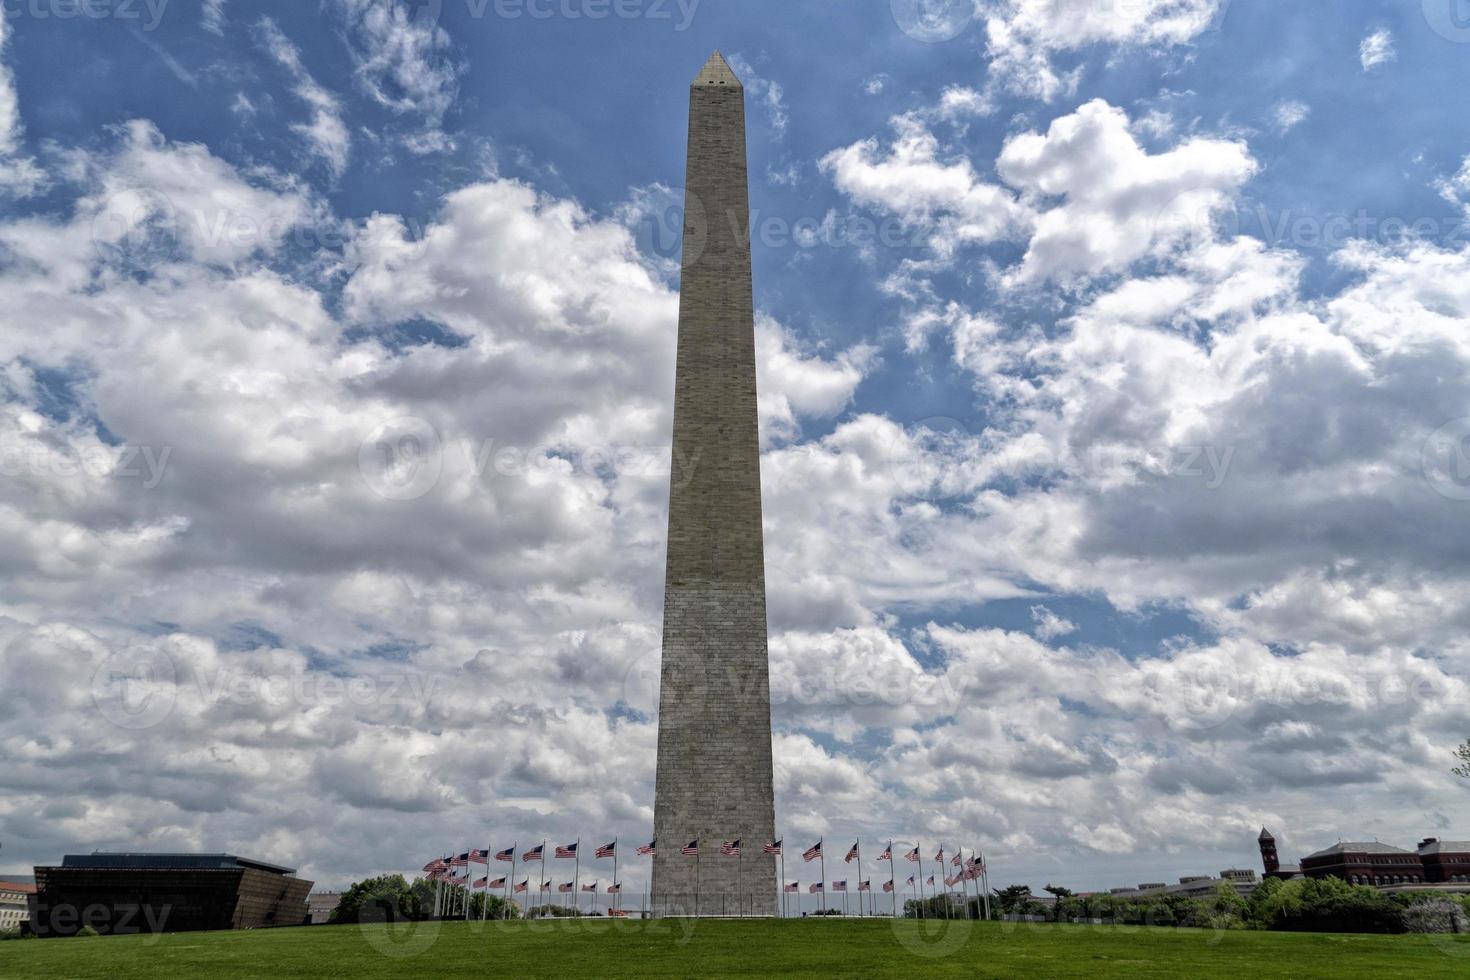 monumento conmemorativo del obelisco de washington en dc foto